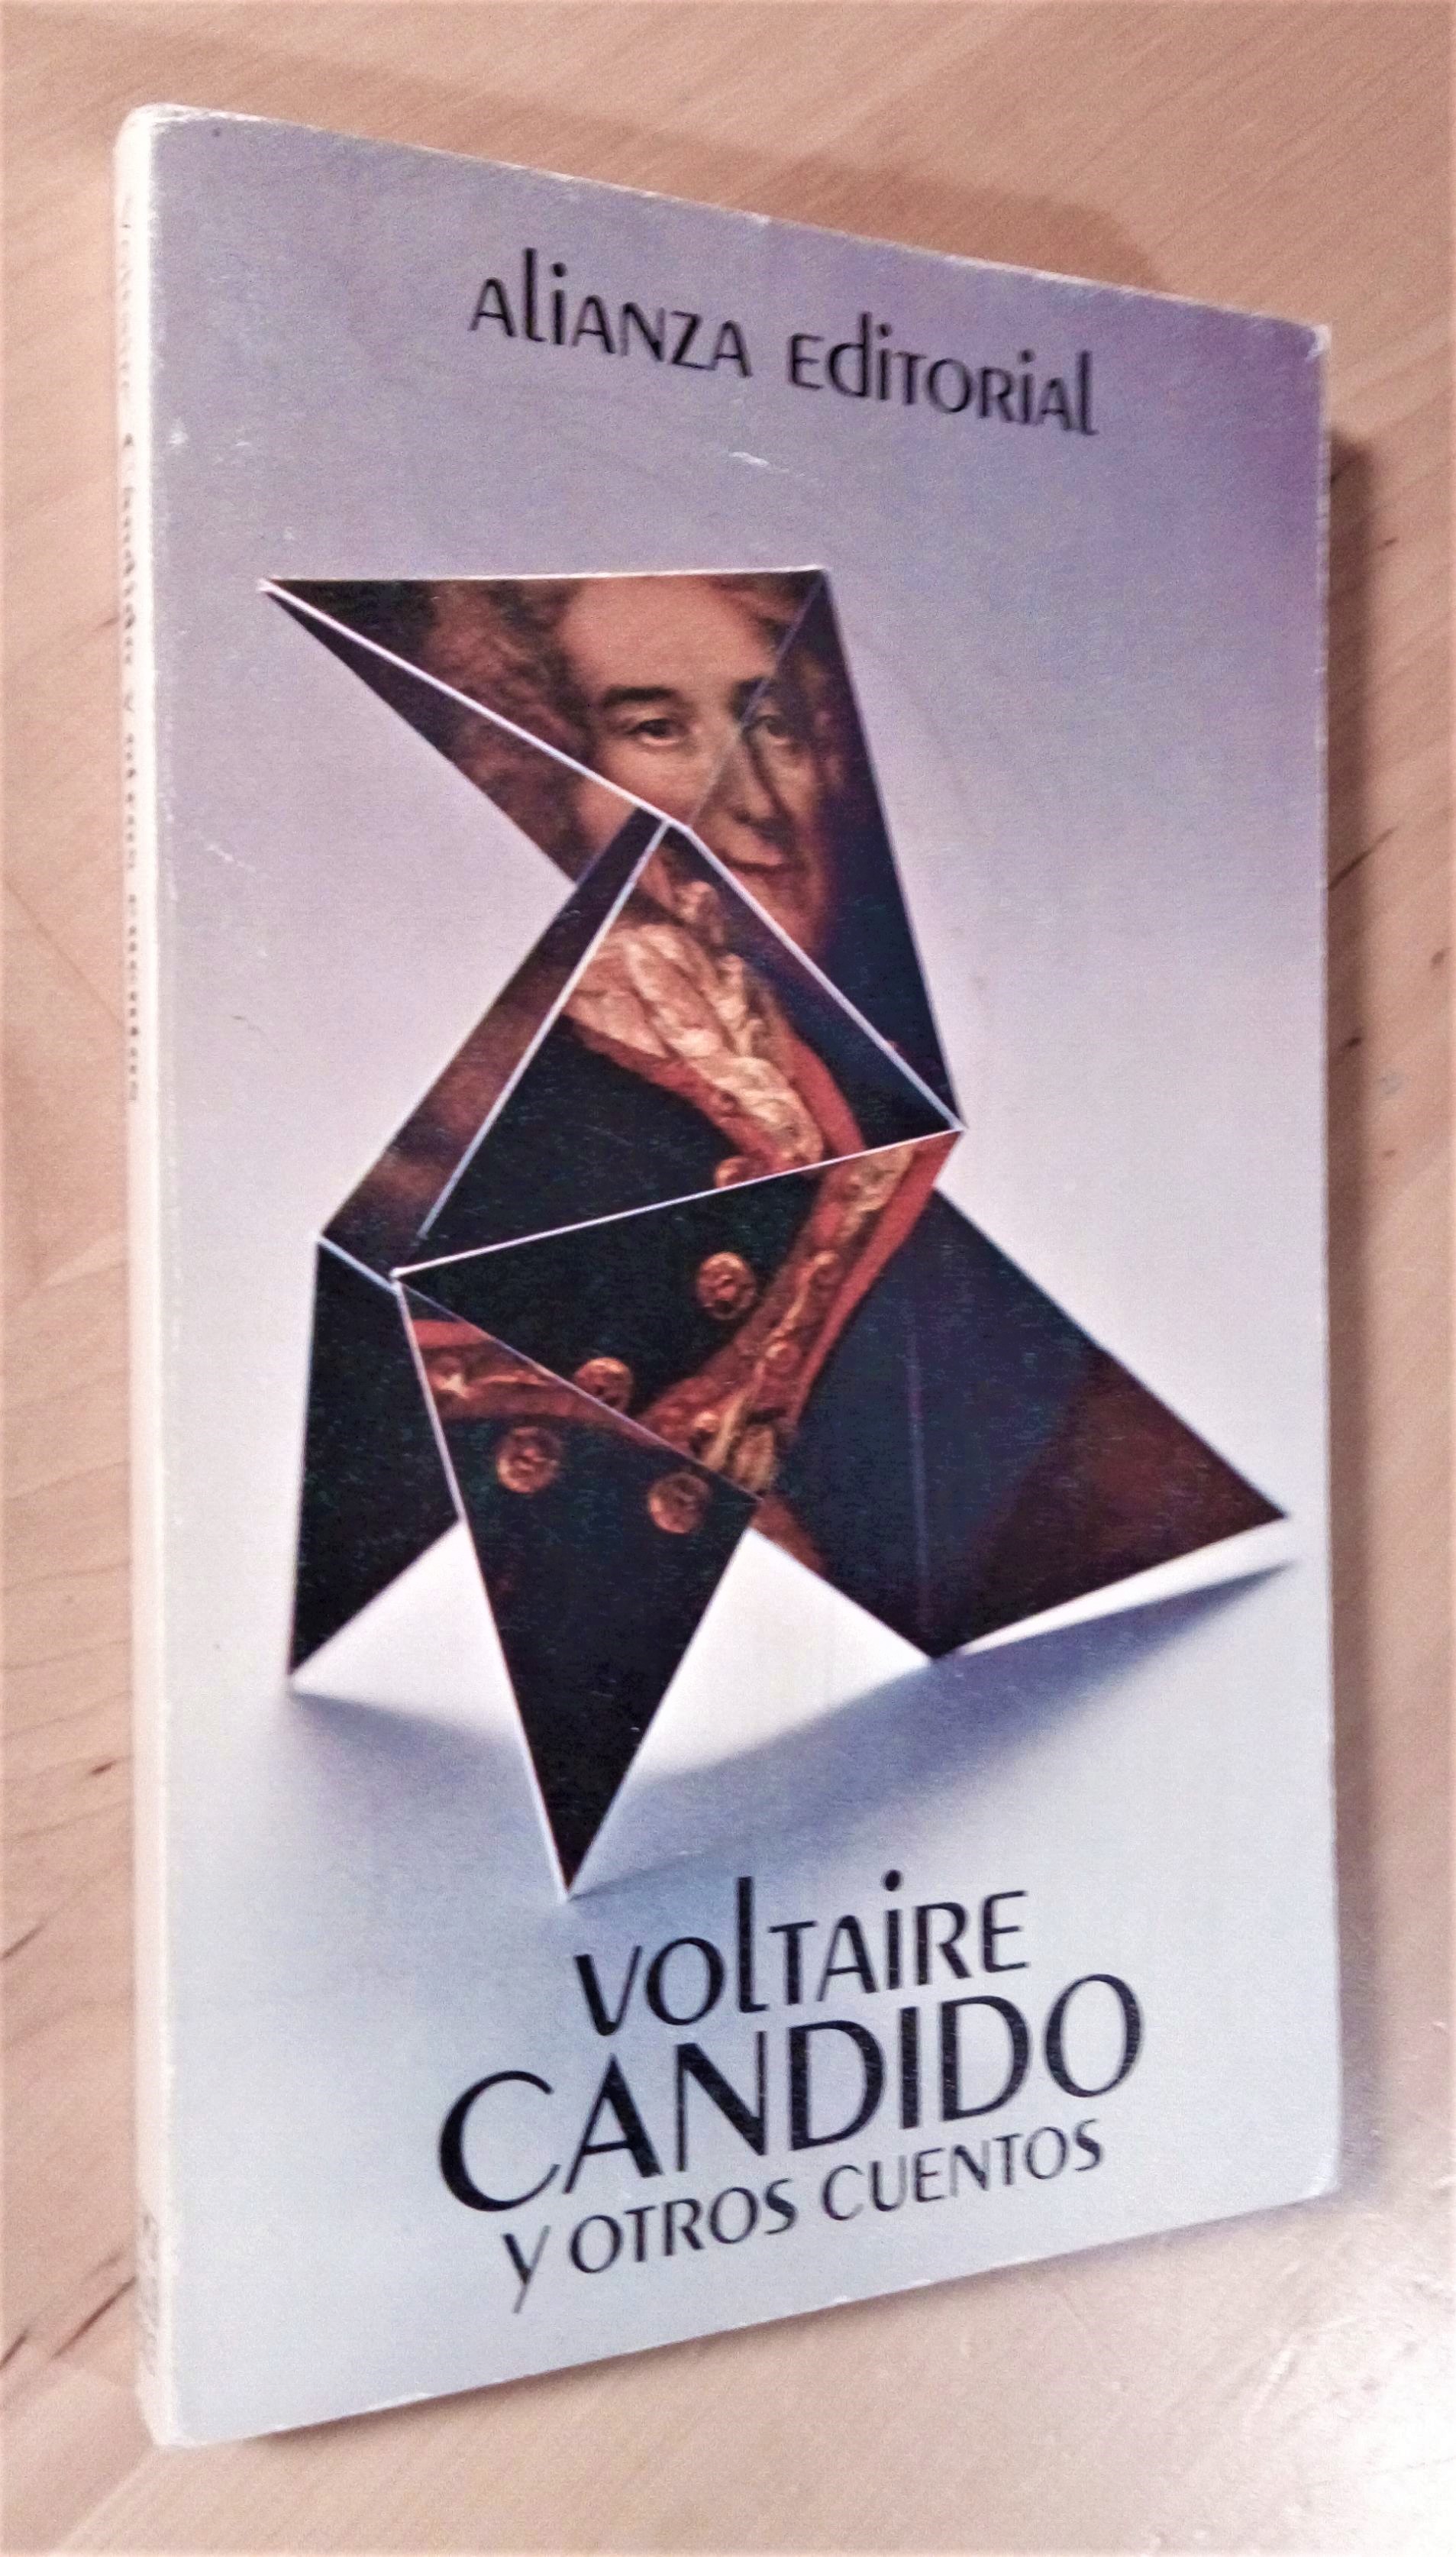 Cándido y otros cuentos - Voltaire (François-Marie Arouet)